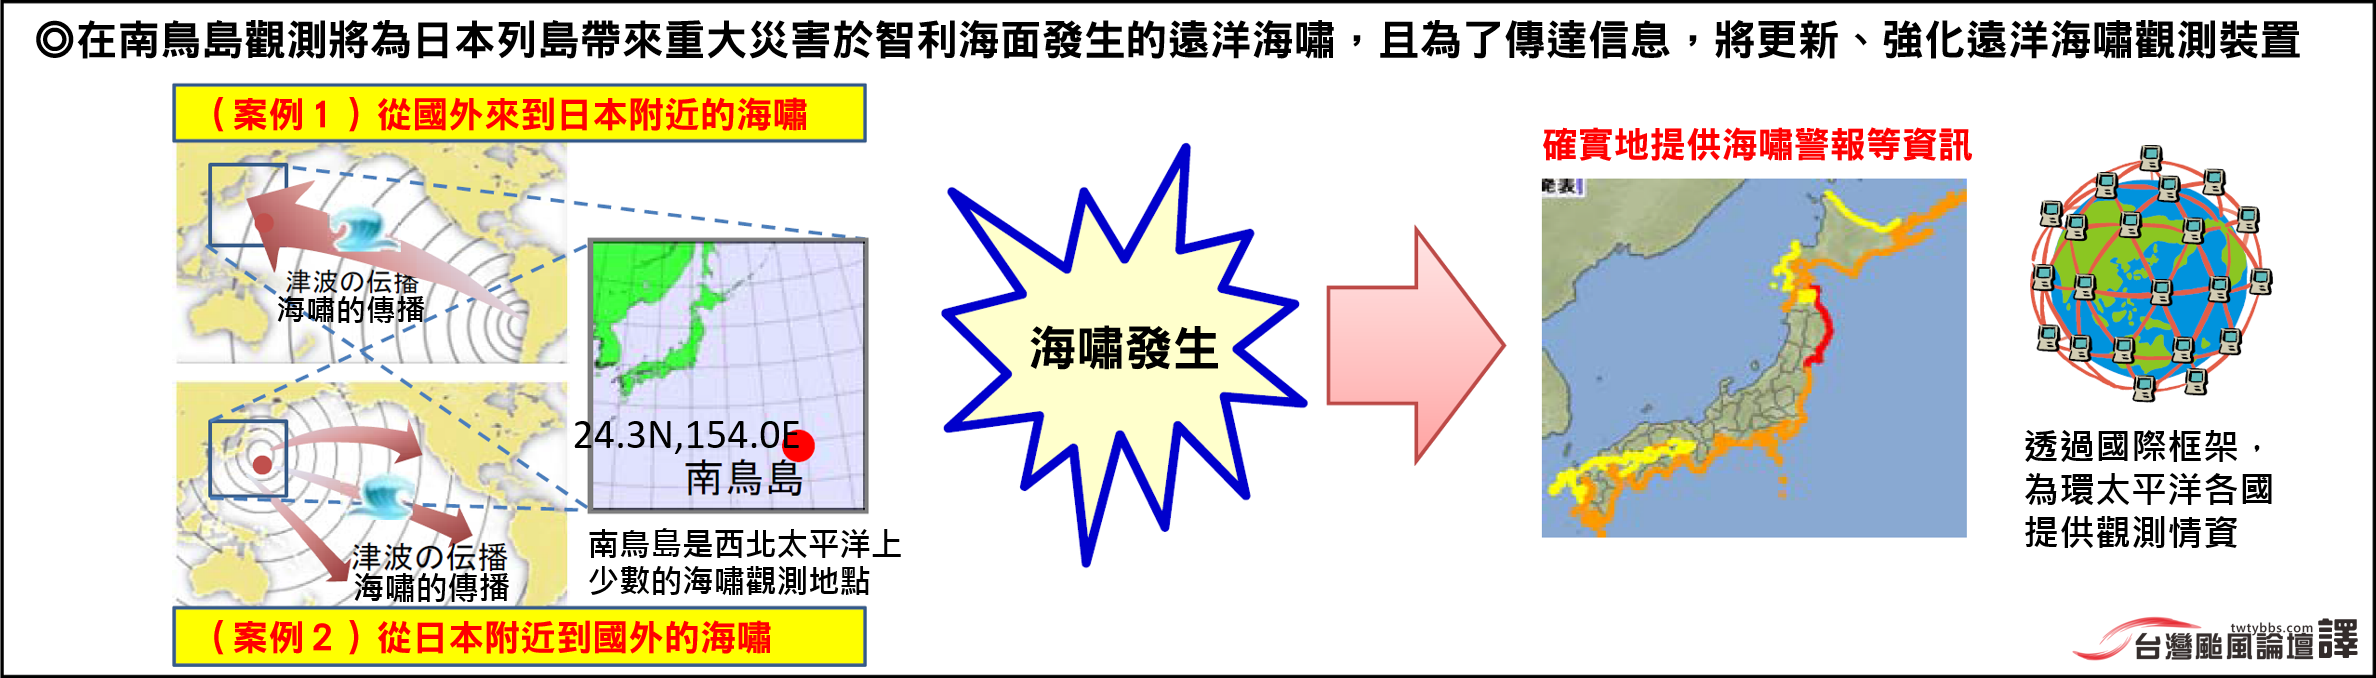 日本氣象廳2016年度預算需求一p4-3(中)[有logo].png